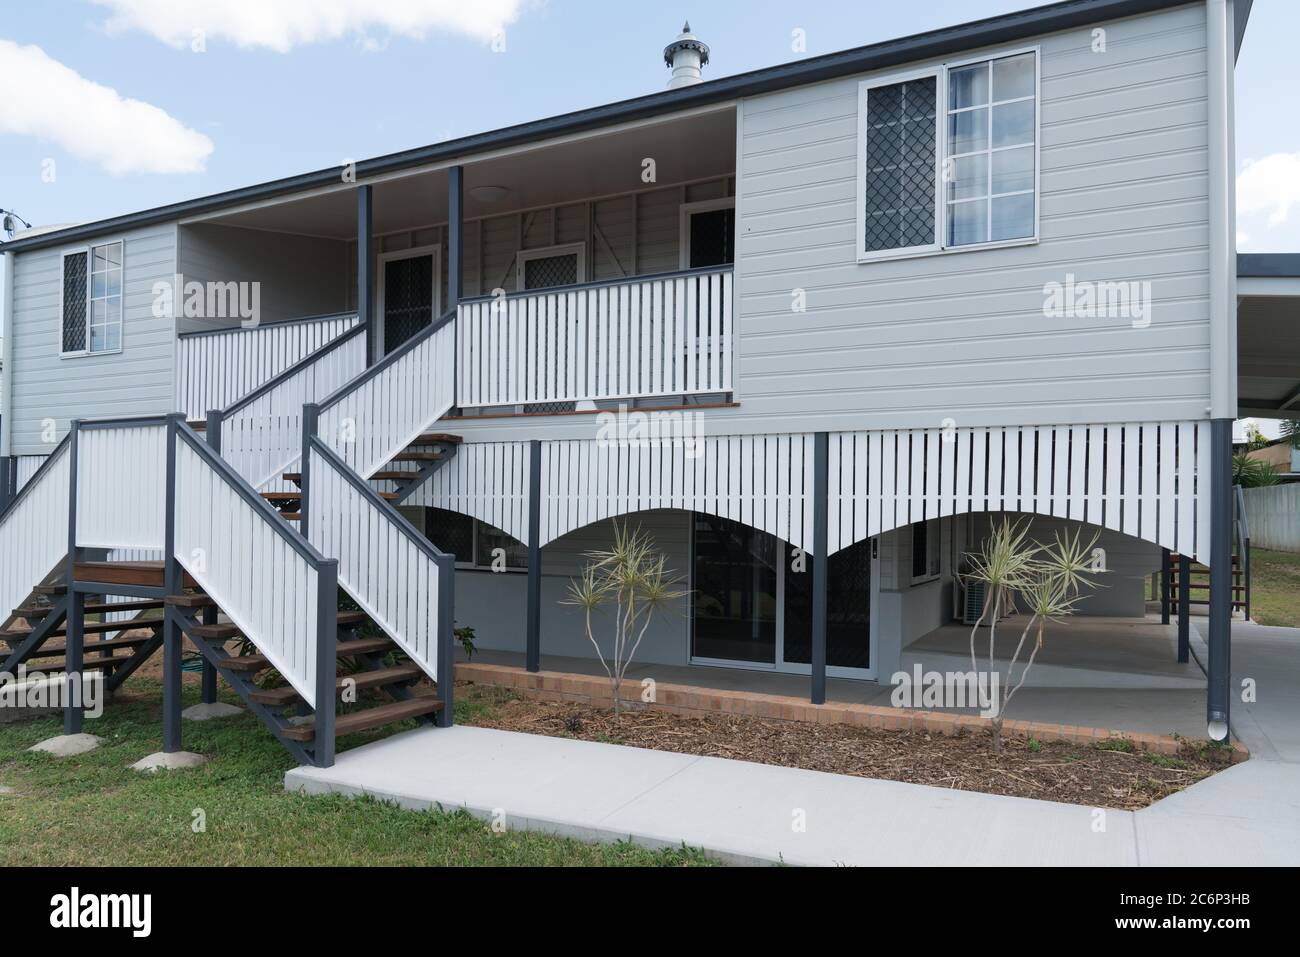 Maison style ancien Queenslander après rénovation et repeint, nouveaux escaliers doubles Banque D'Images